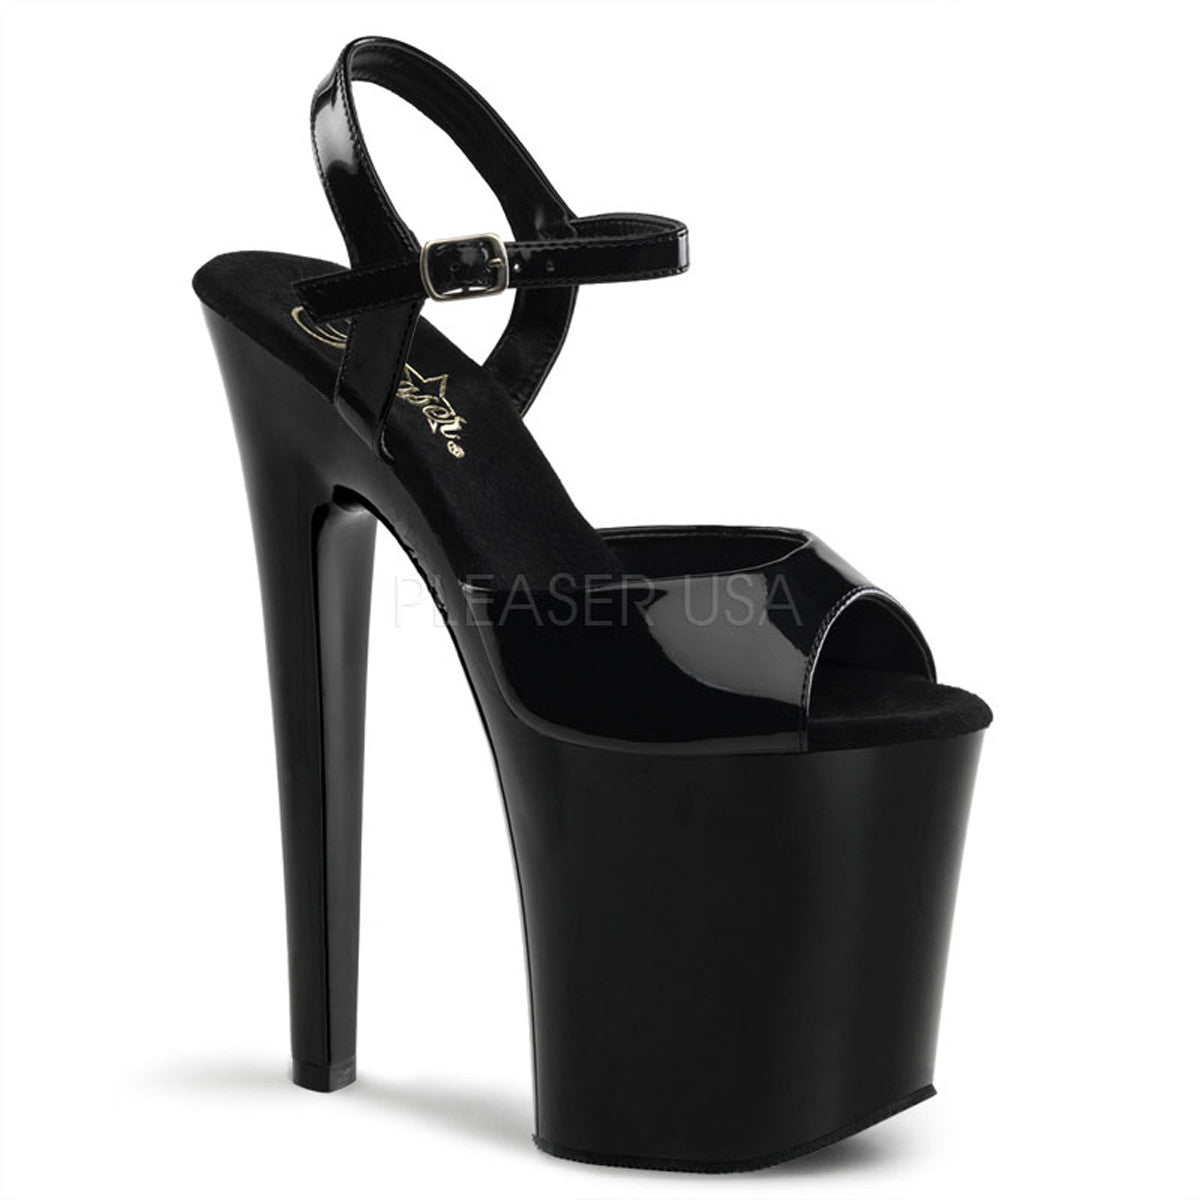 PLEASER XTREME-809 Black Pat Platform Sandals - Shoecup.com